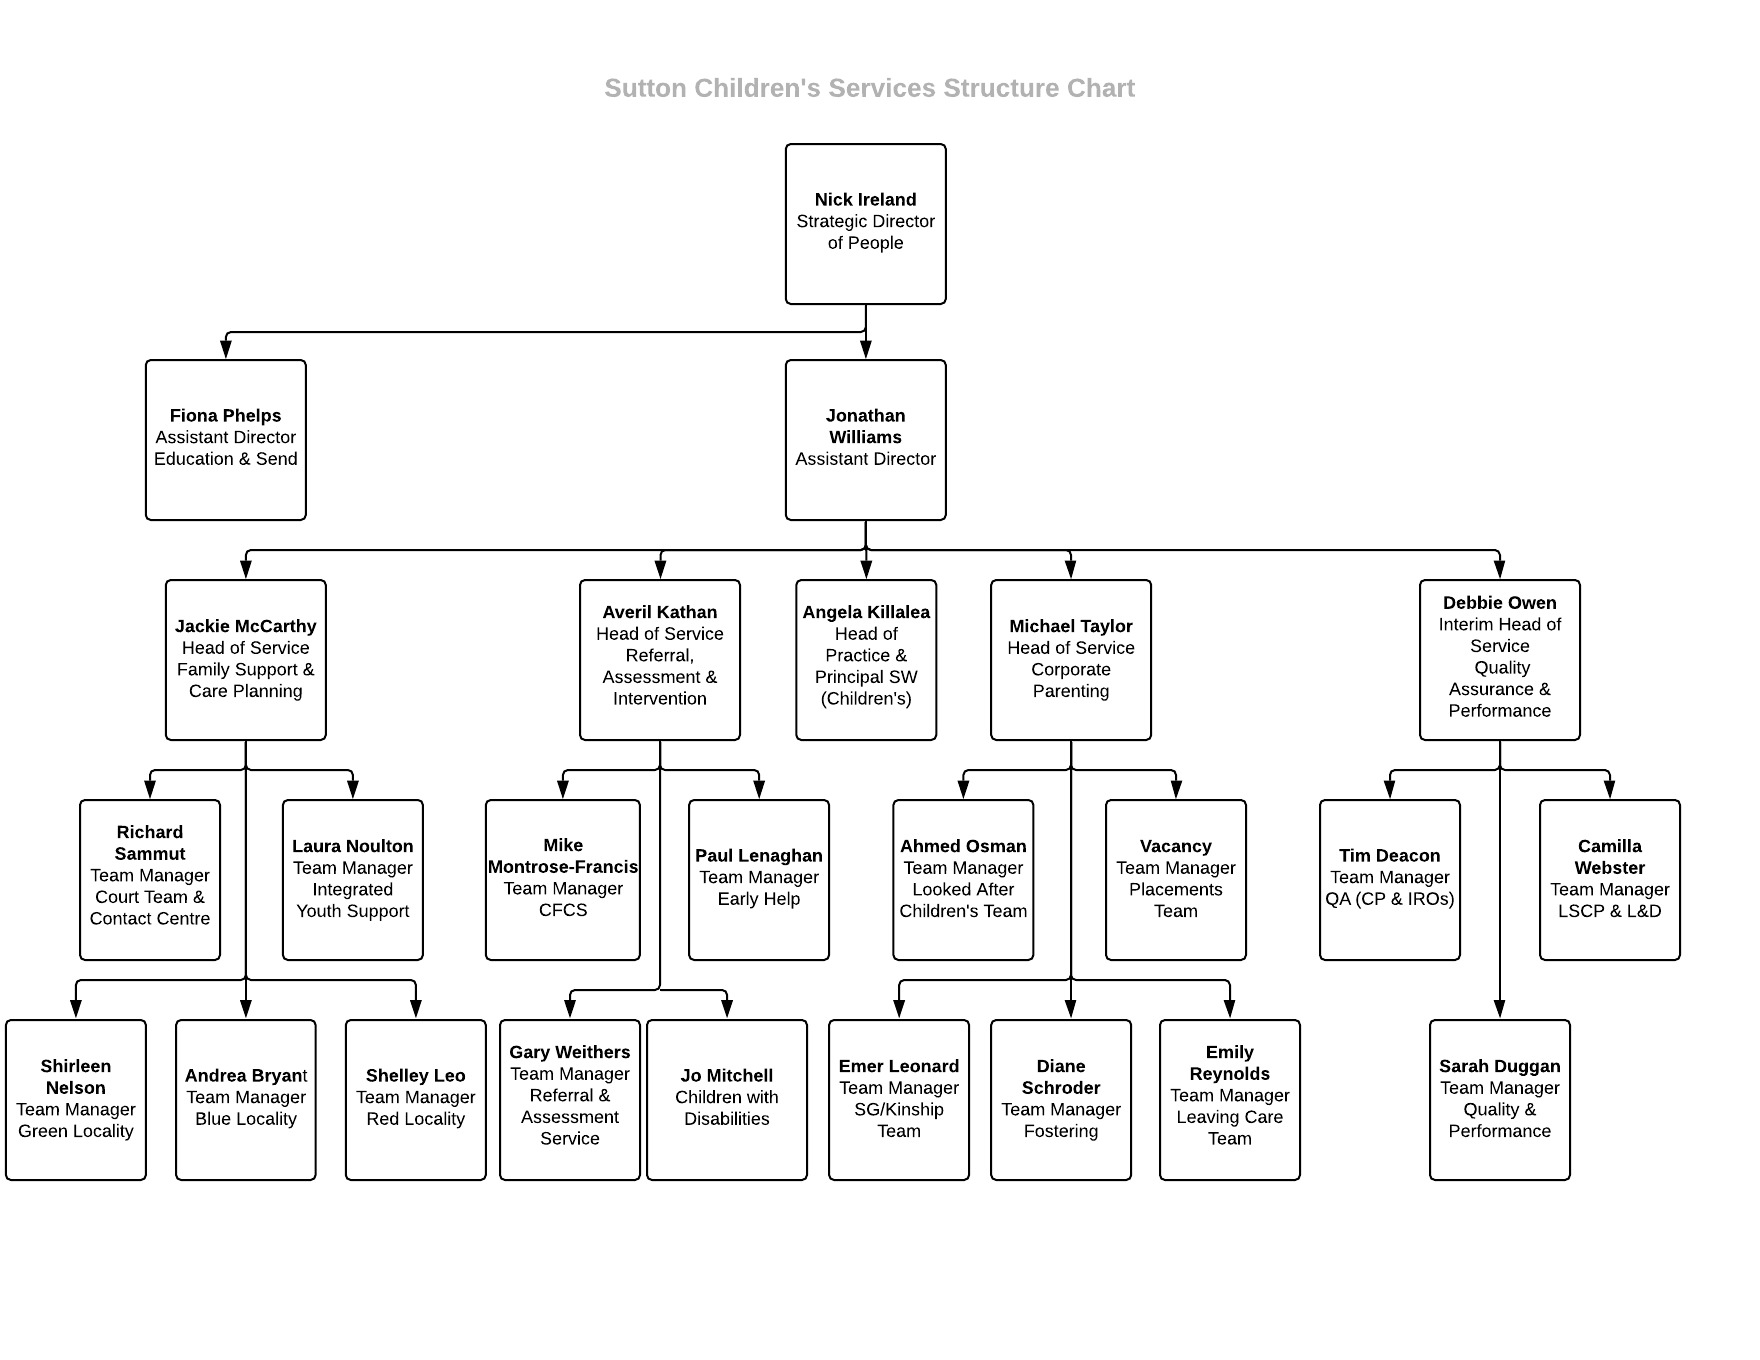 Sutton Children's Organisational Structure